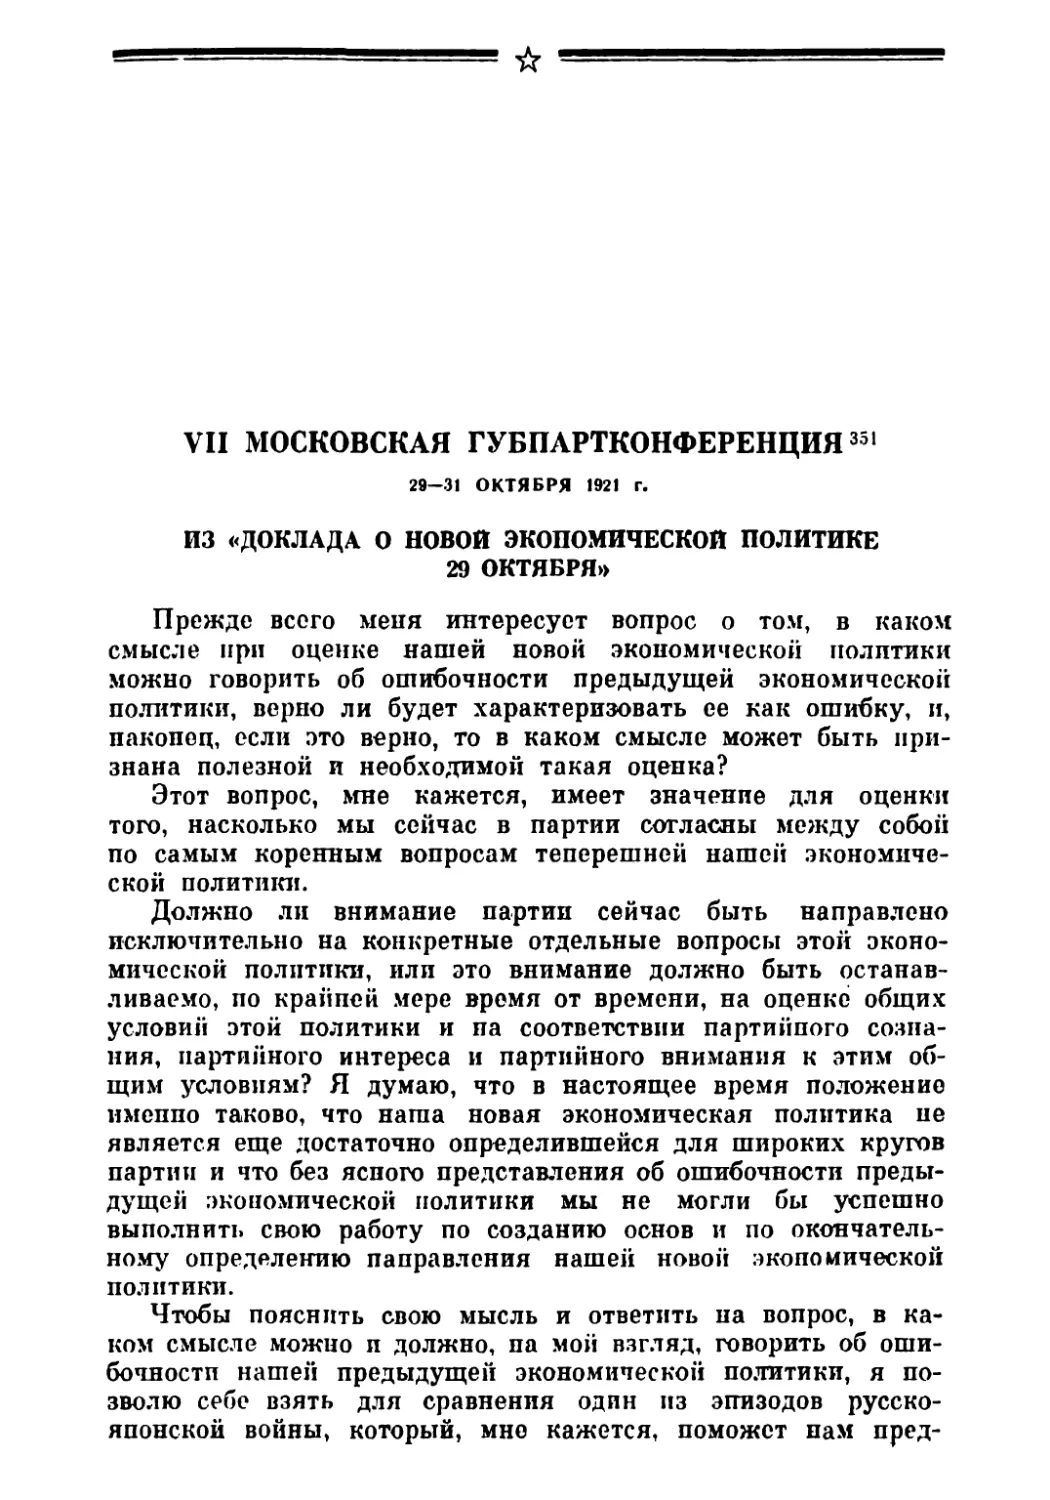 VII Московская губпартконференция 29—31 октября 1921 г.